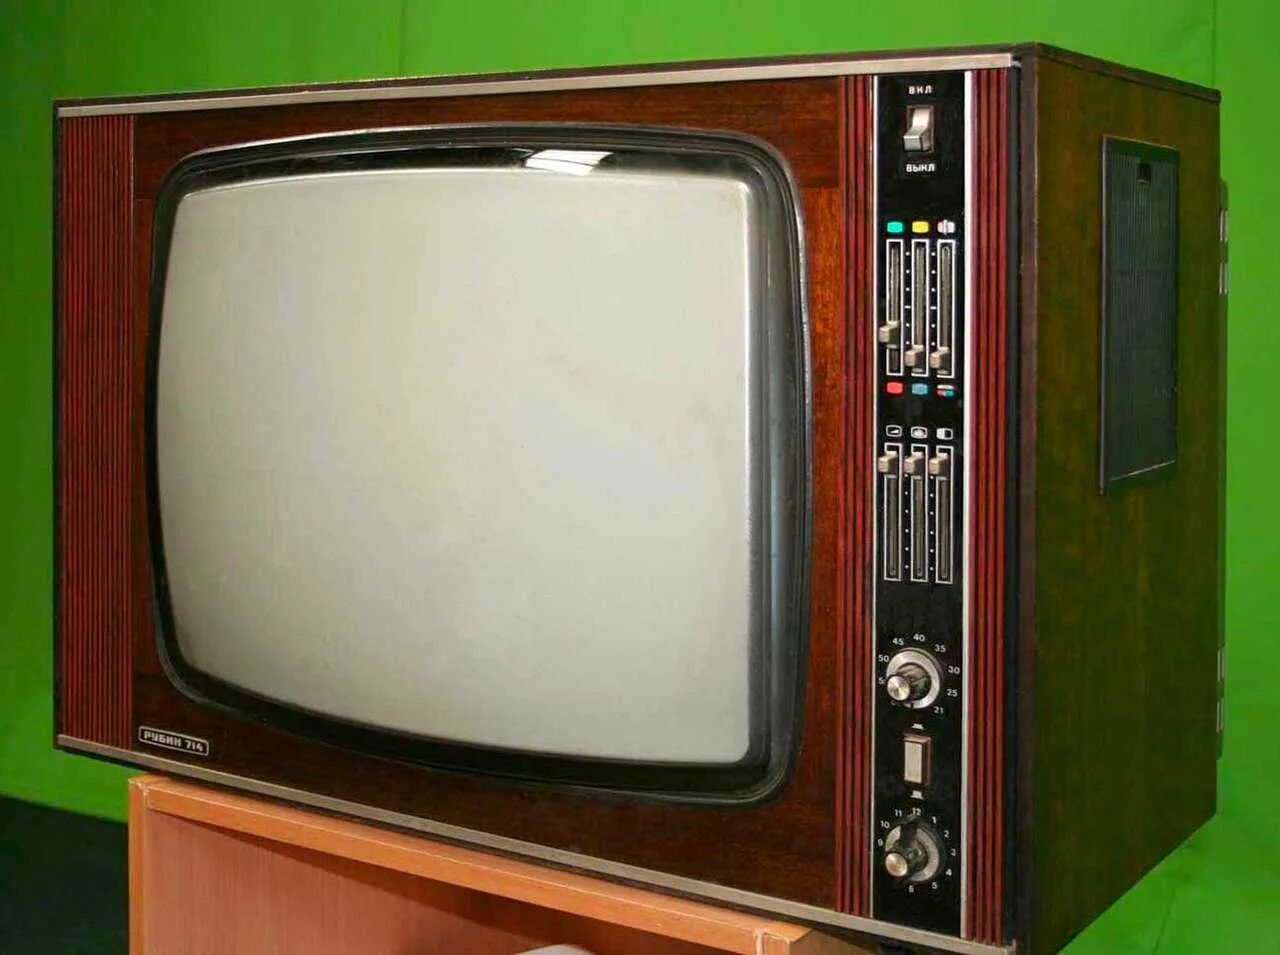 1 телевизор в кредит. Телевизор Рубин 714. Телевизор Рубин СССР 714. Цветной телевизор Рубин 714. Ламповый телевизор Рубин 714.